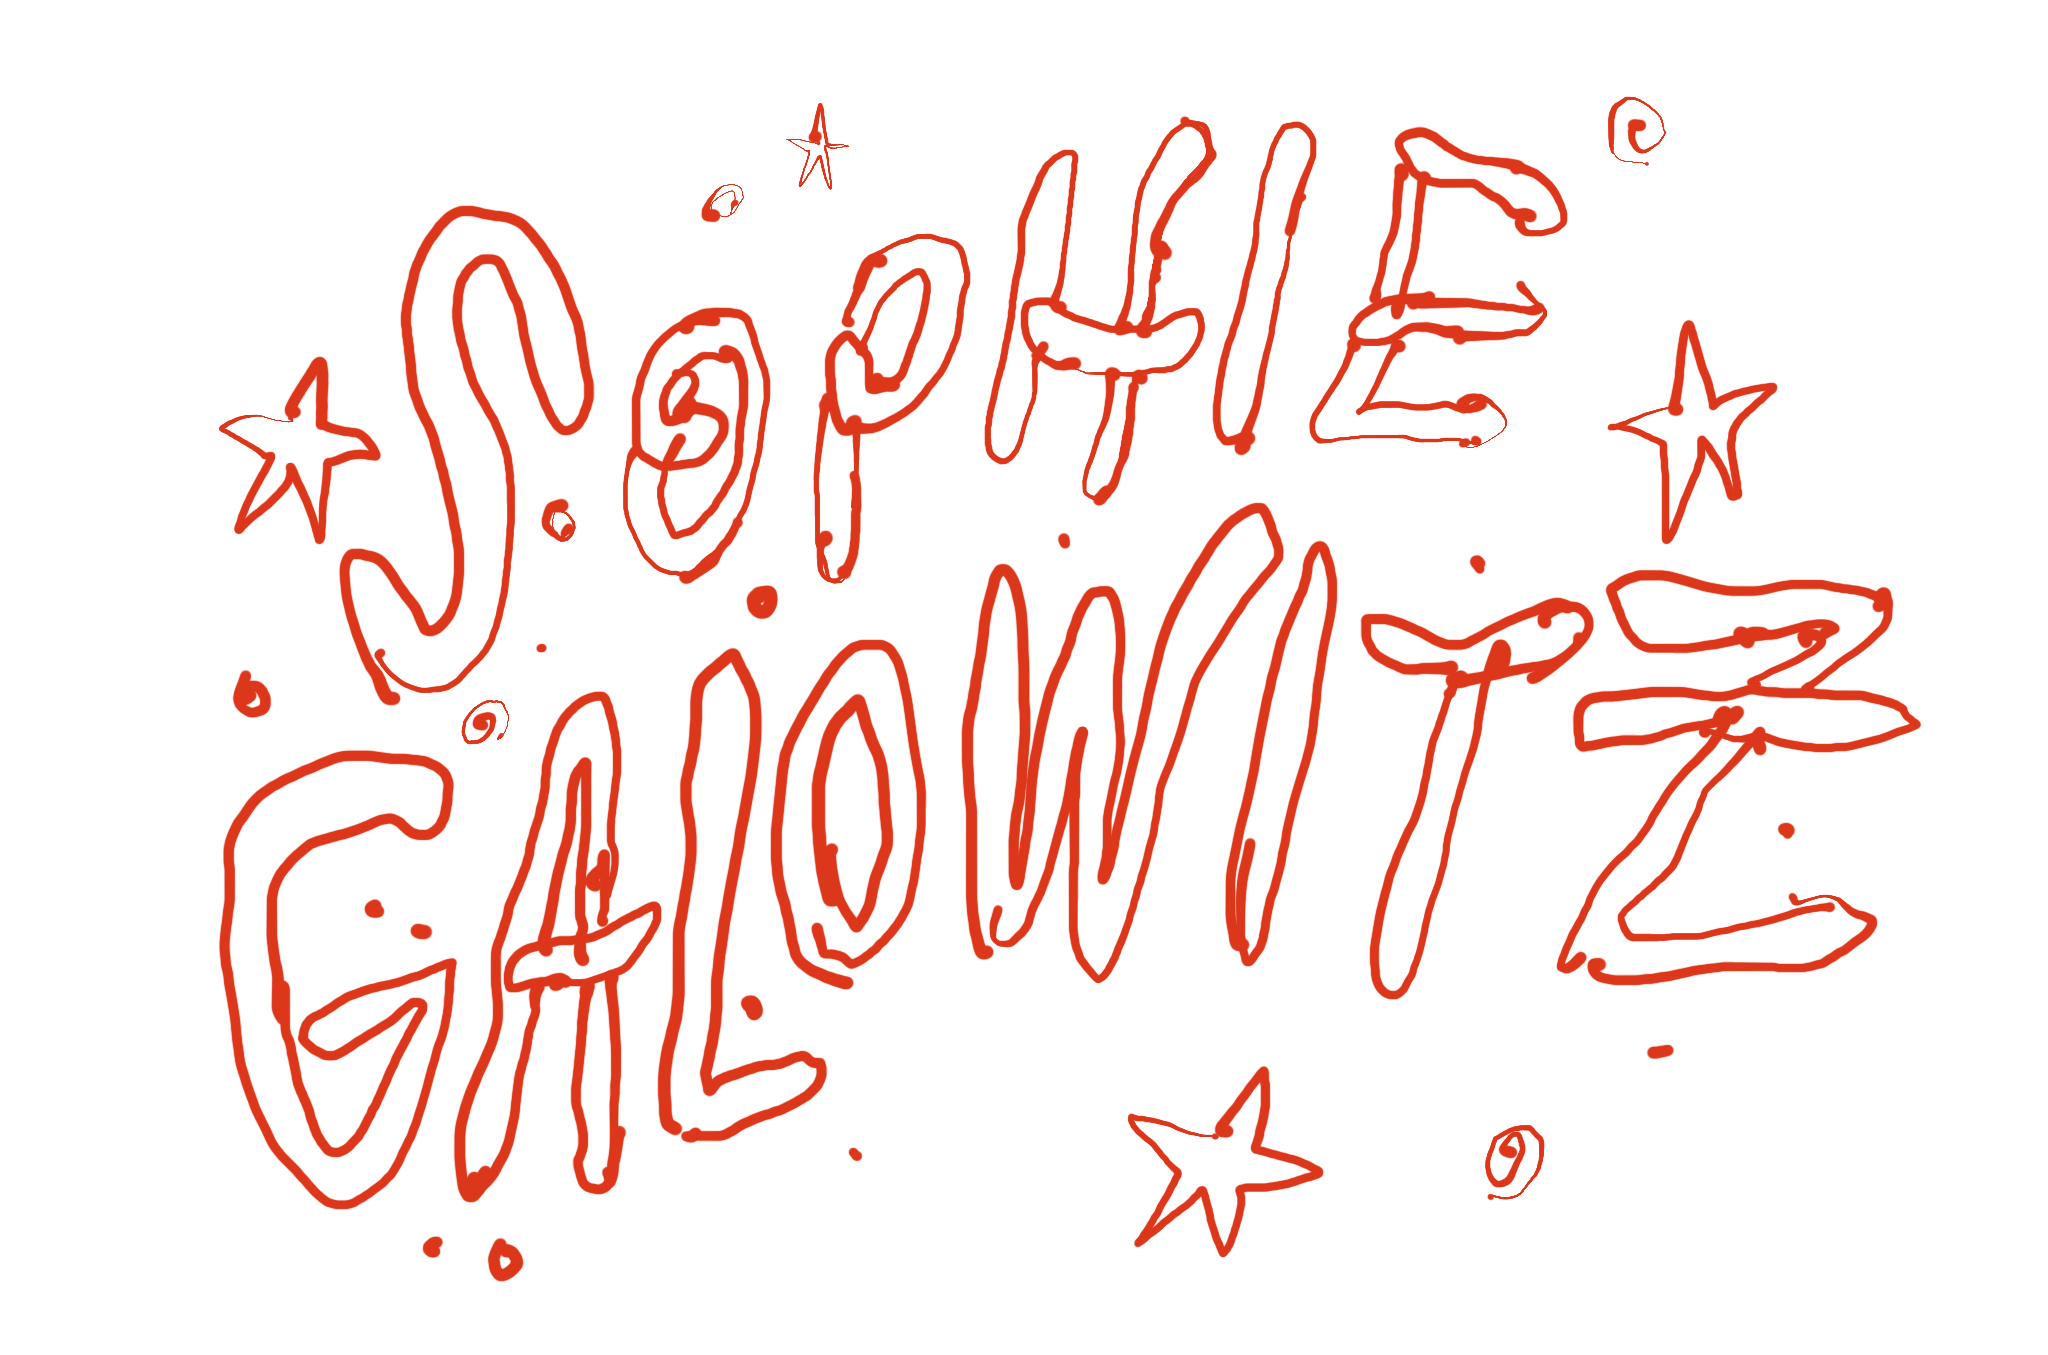 Sophie Galowitz